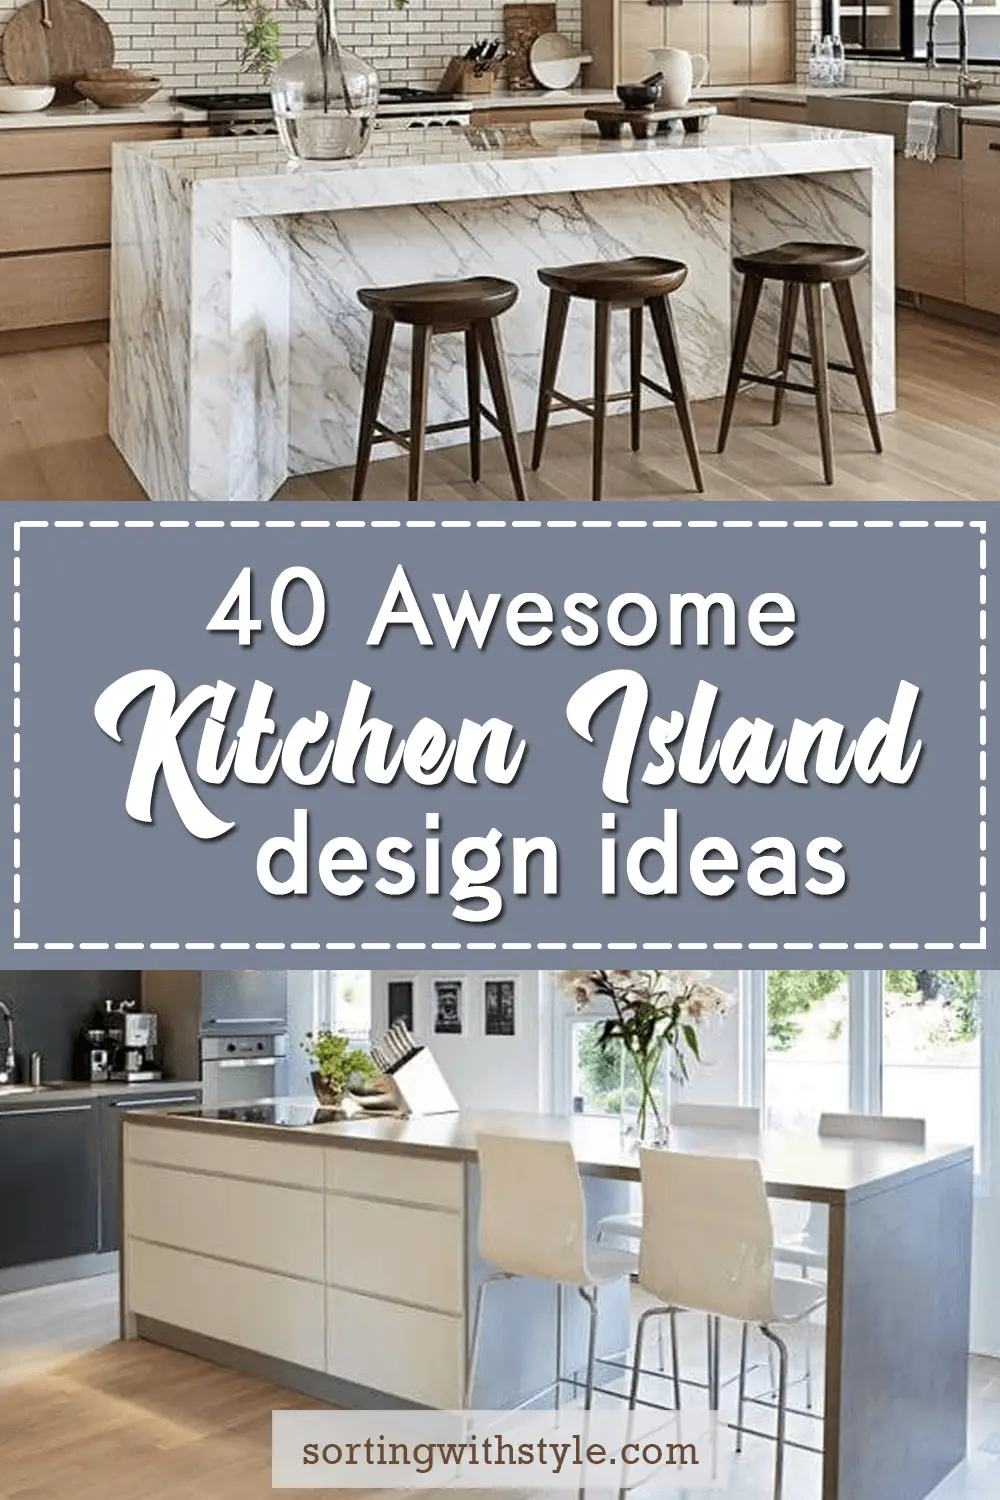 40 Awesome Kitchen Island Design Ideas, Kitchen Cabinet Island Design Ideas